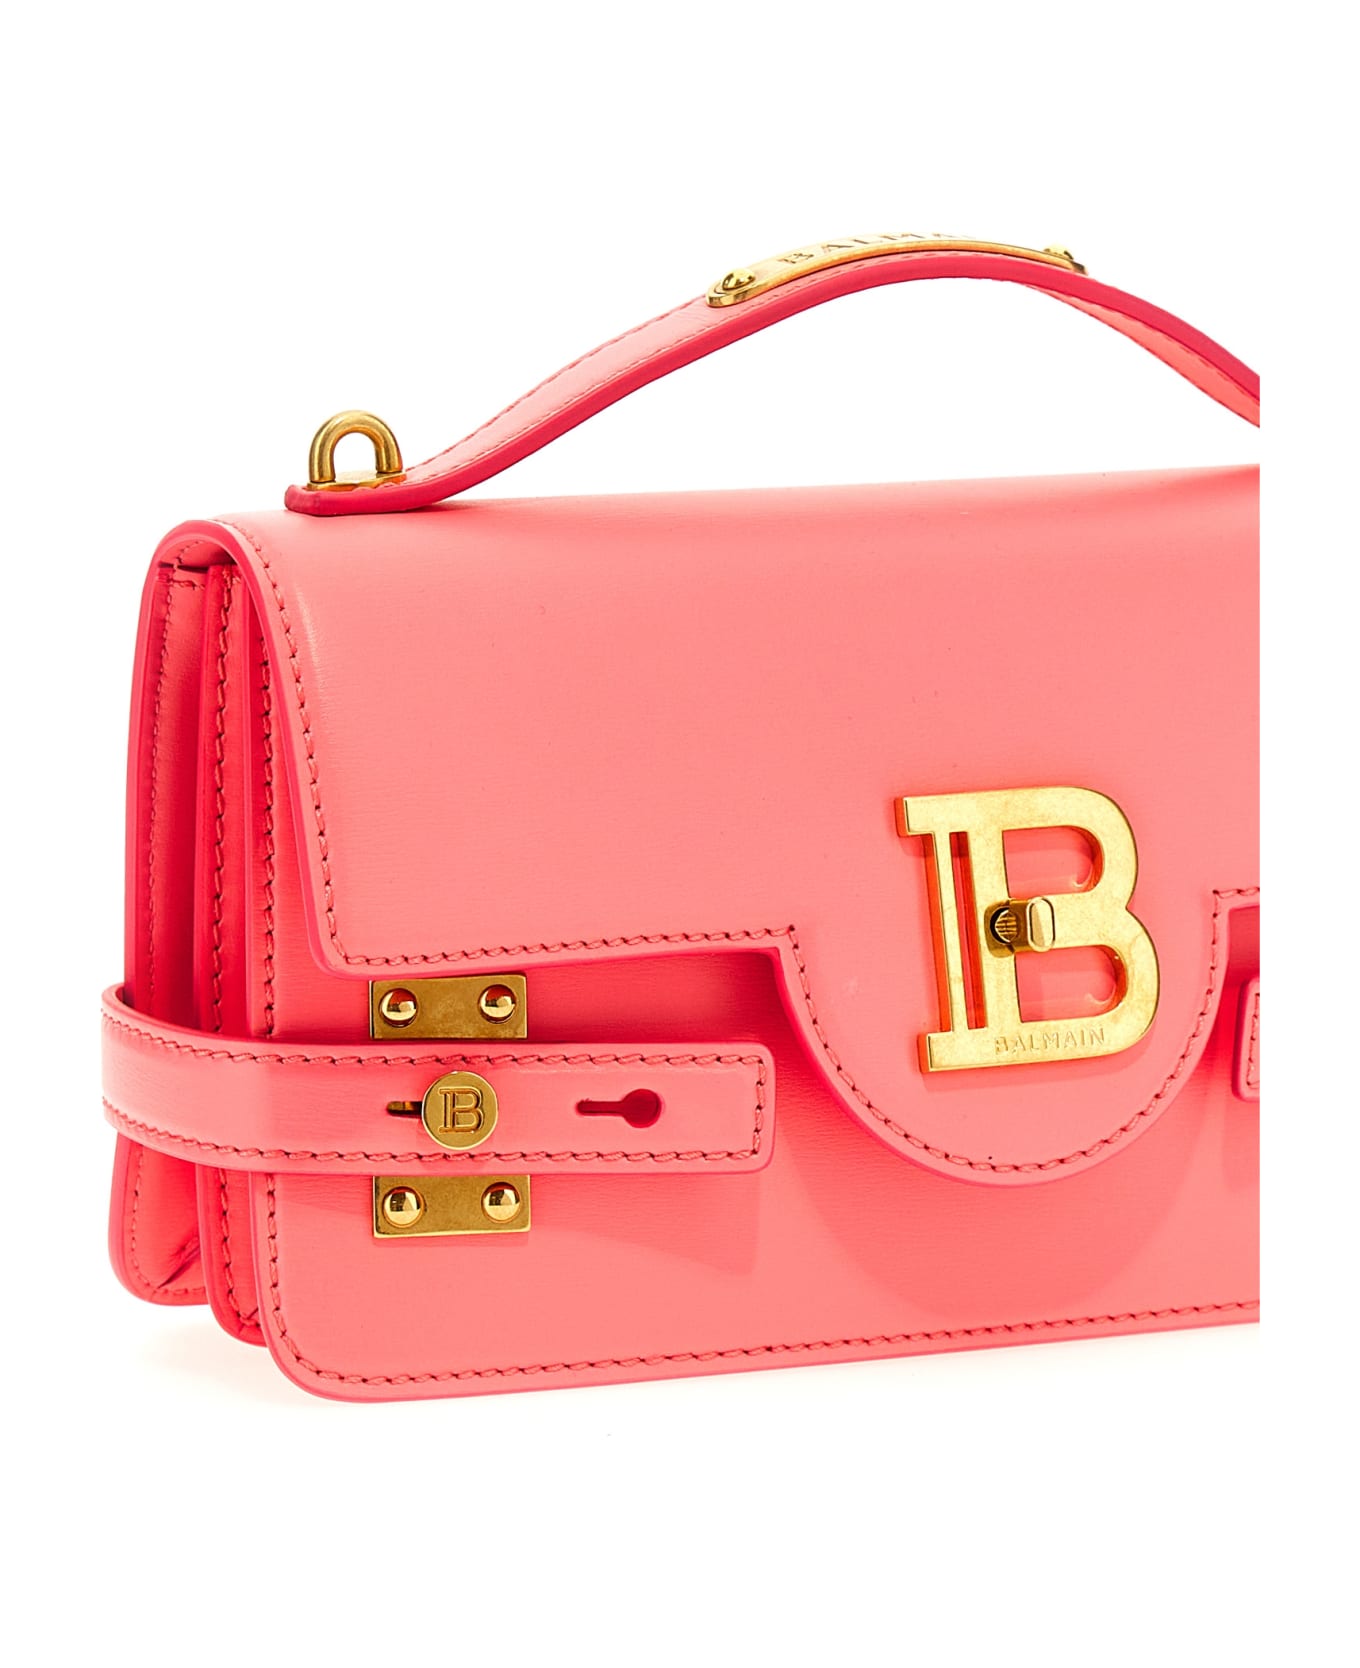 Balmain B Buzz 24 Handbag - Pink